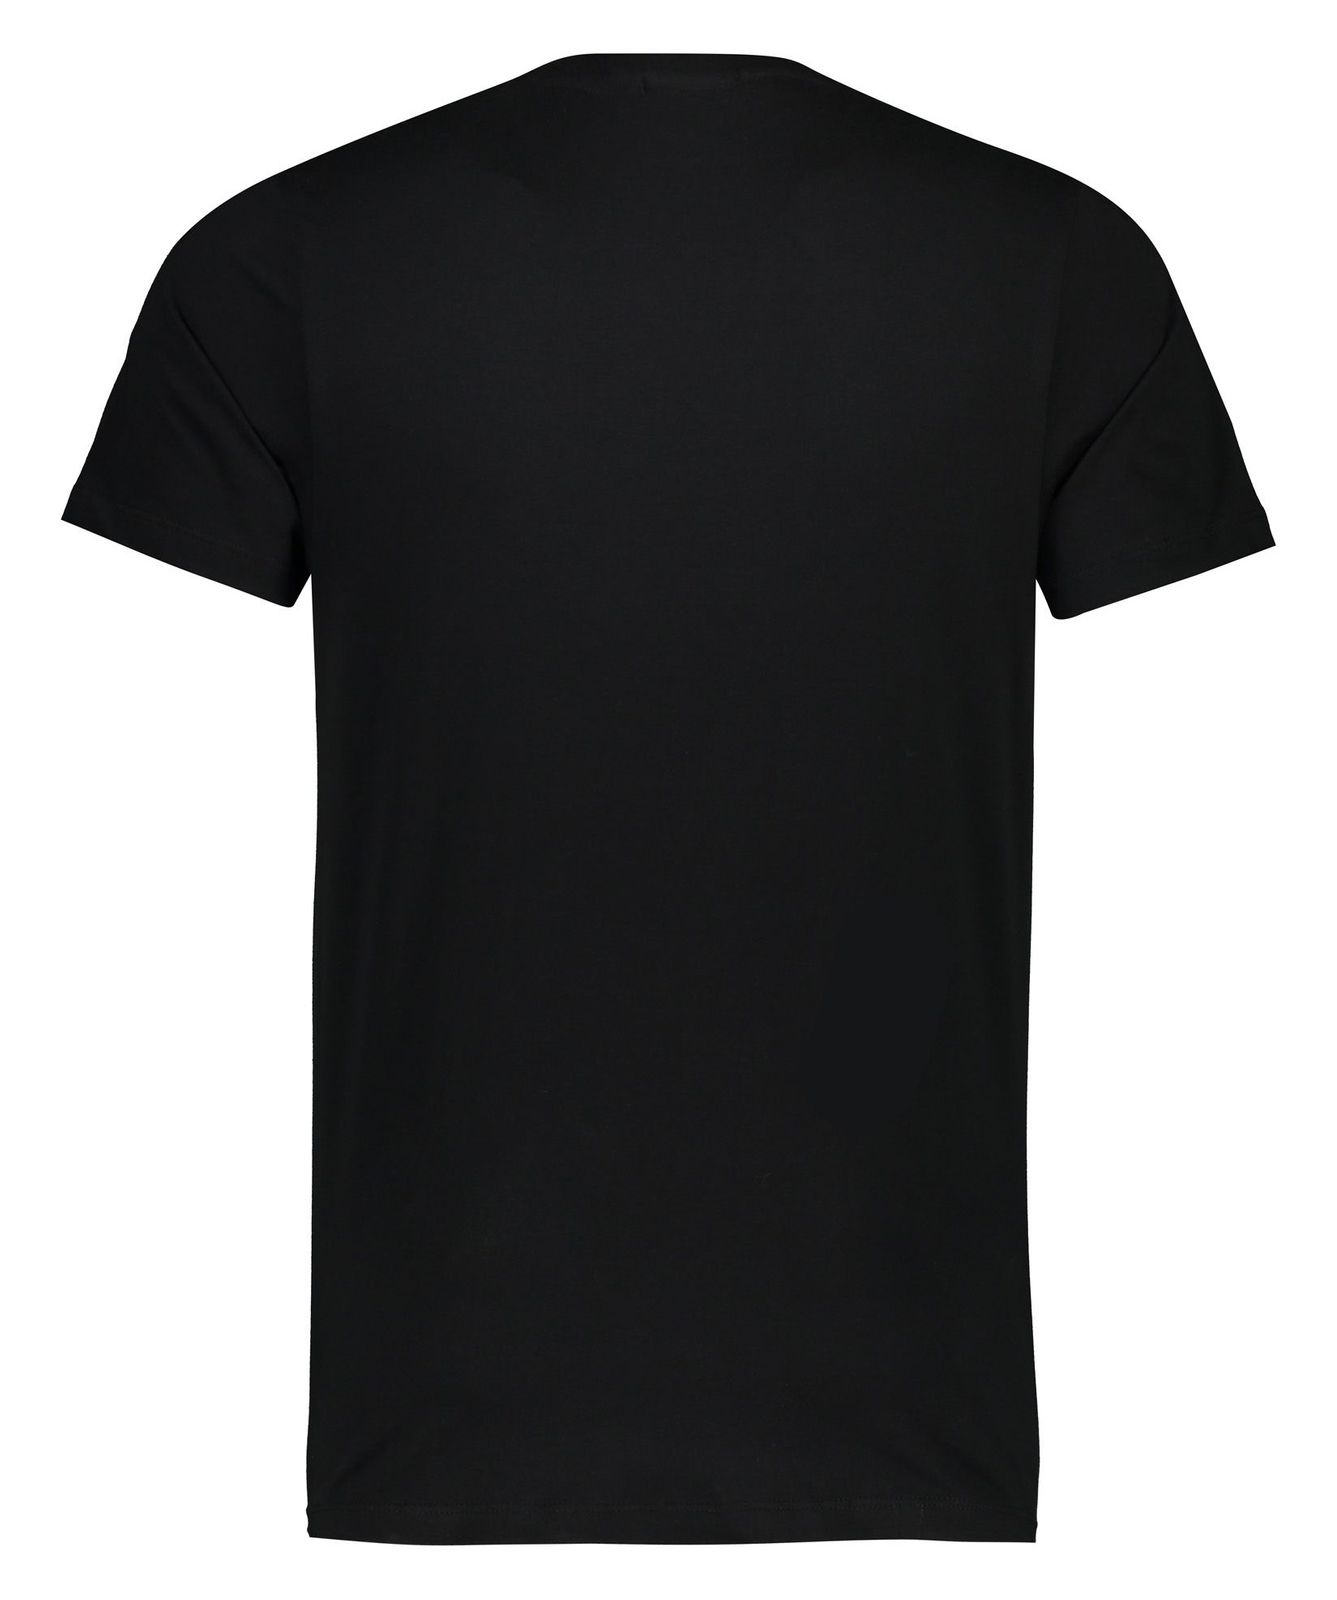 تی شرت مردانه آر ان اس مدل 1131110-99